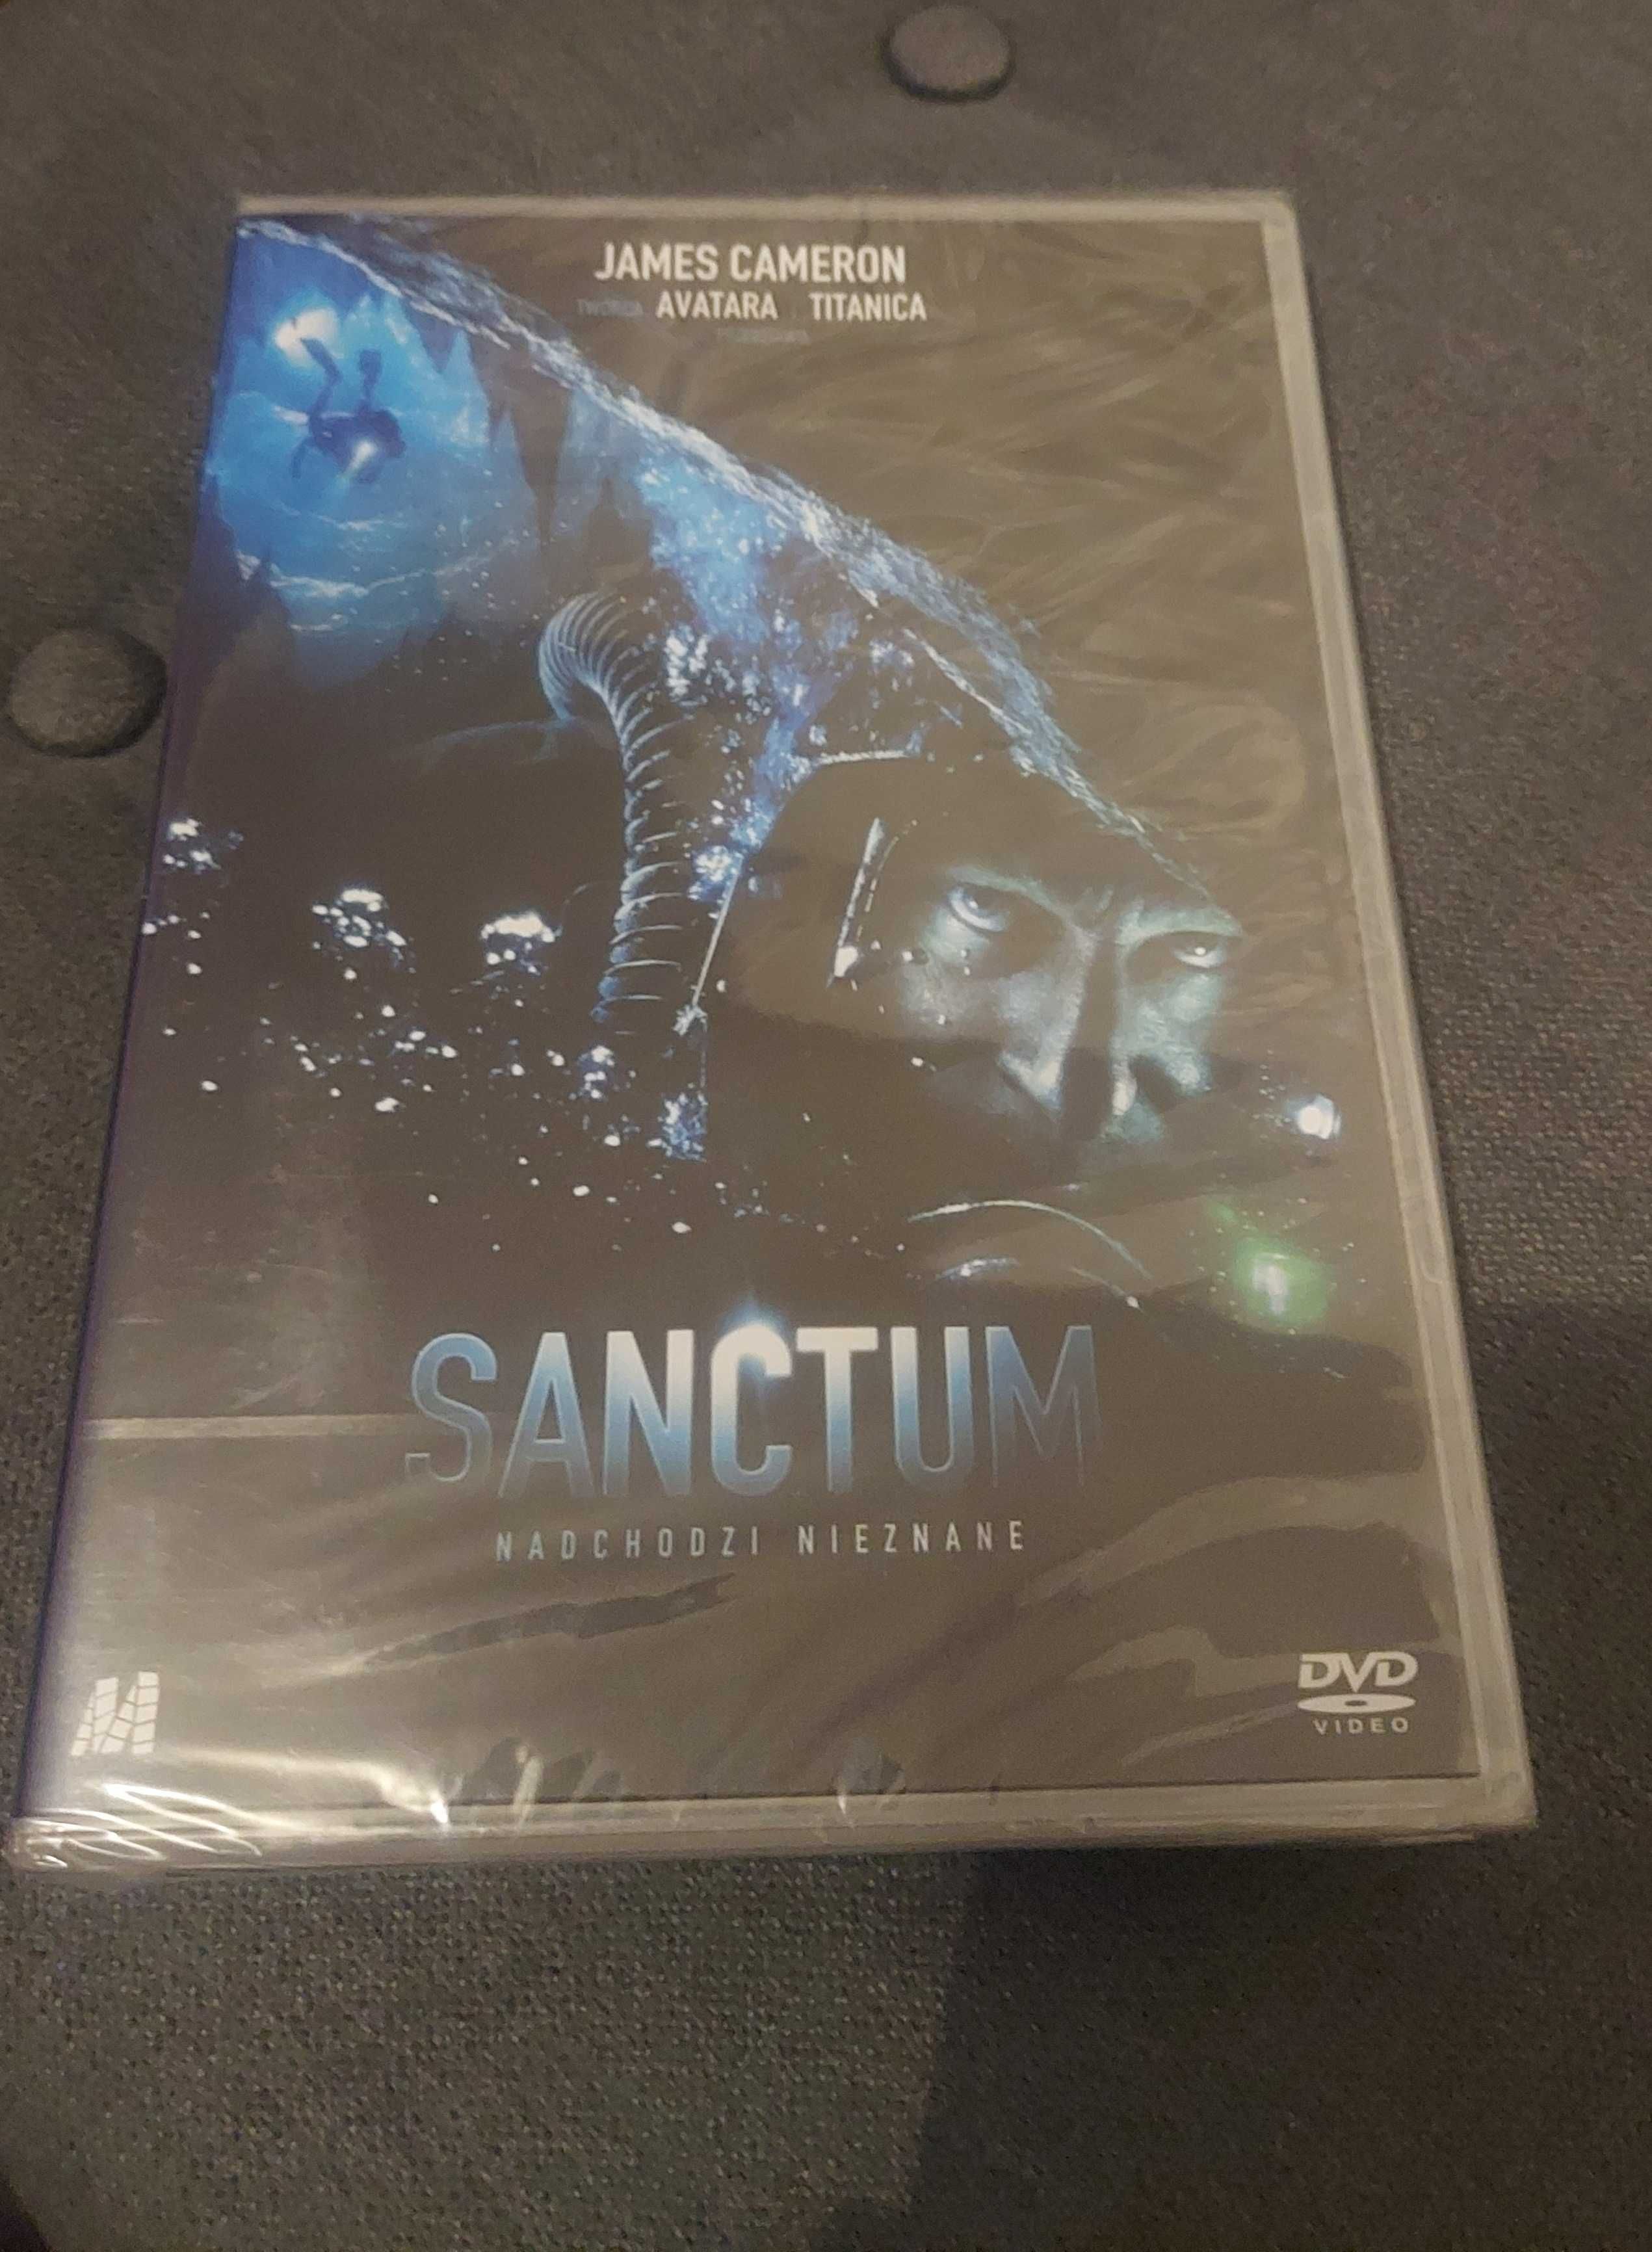 DVD "Sanctum Nadchodzi Nieznane"